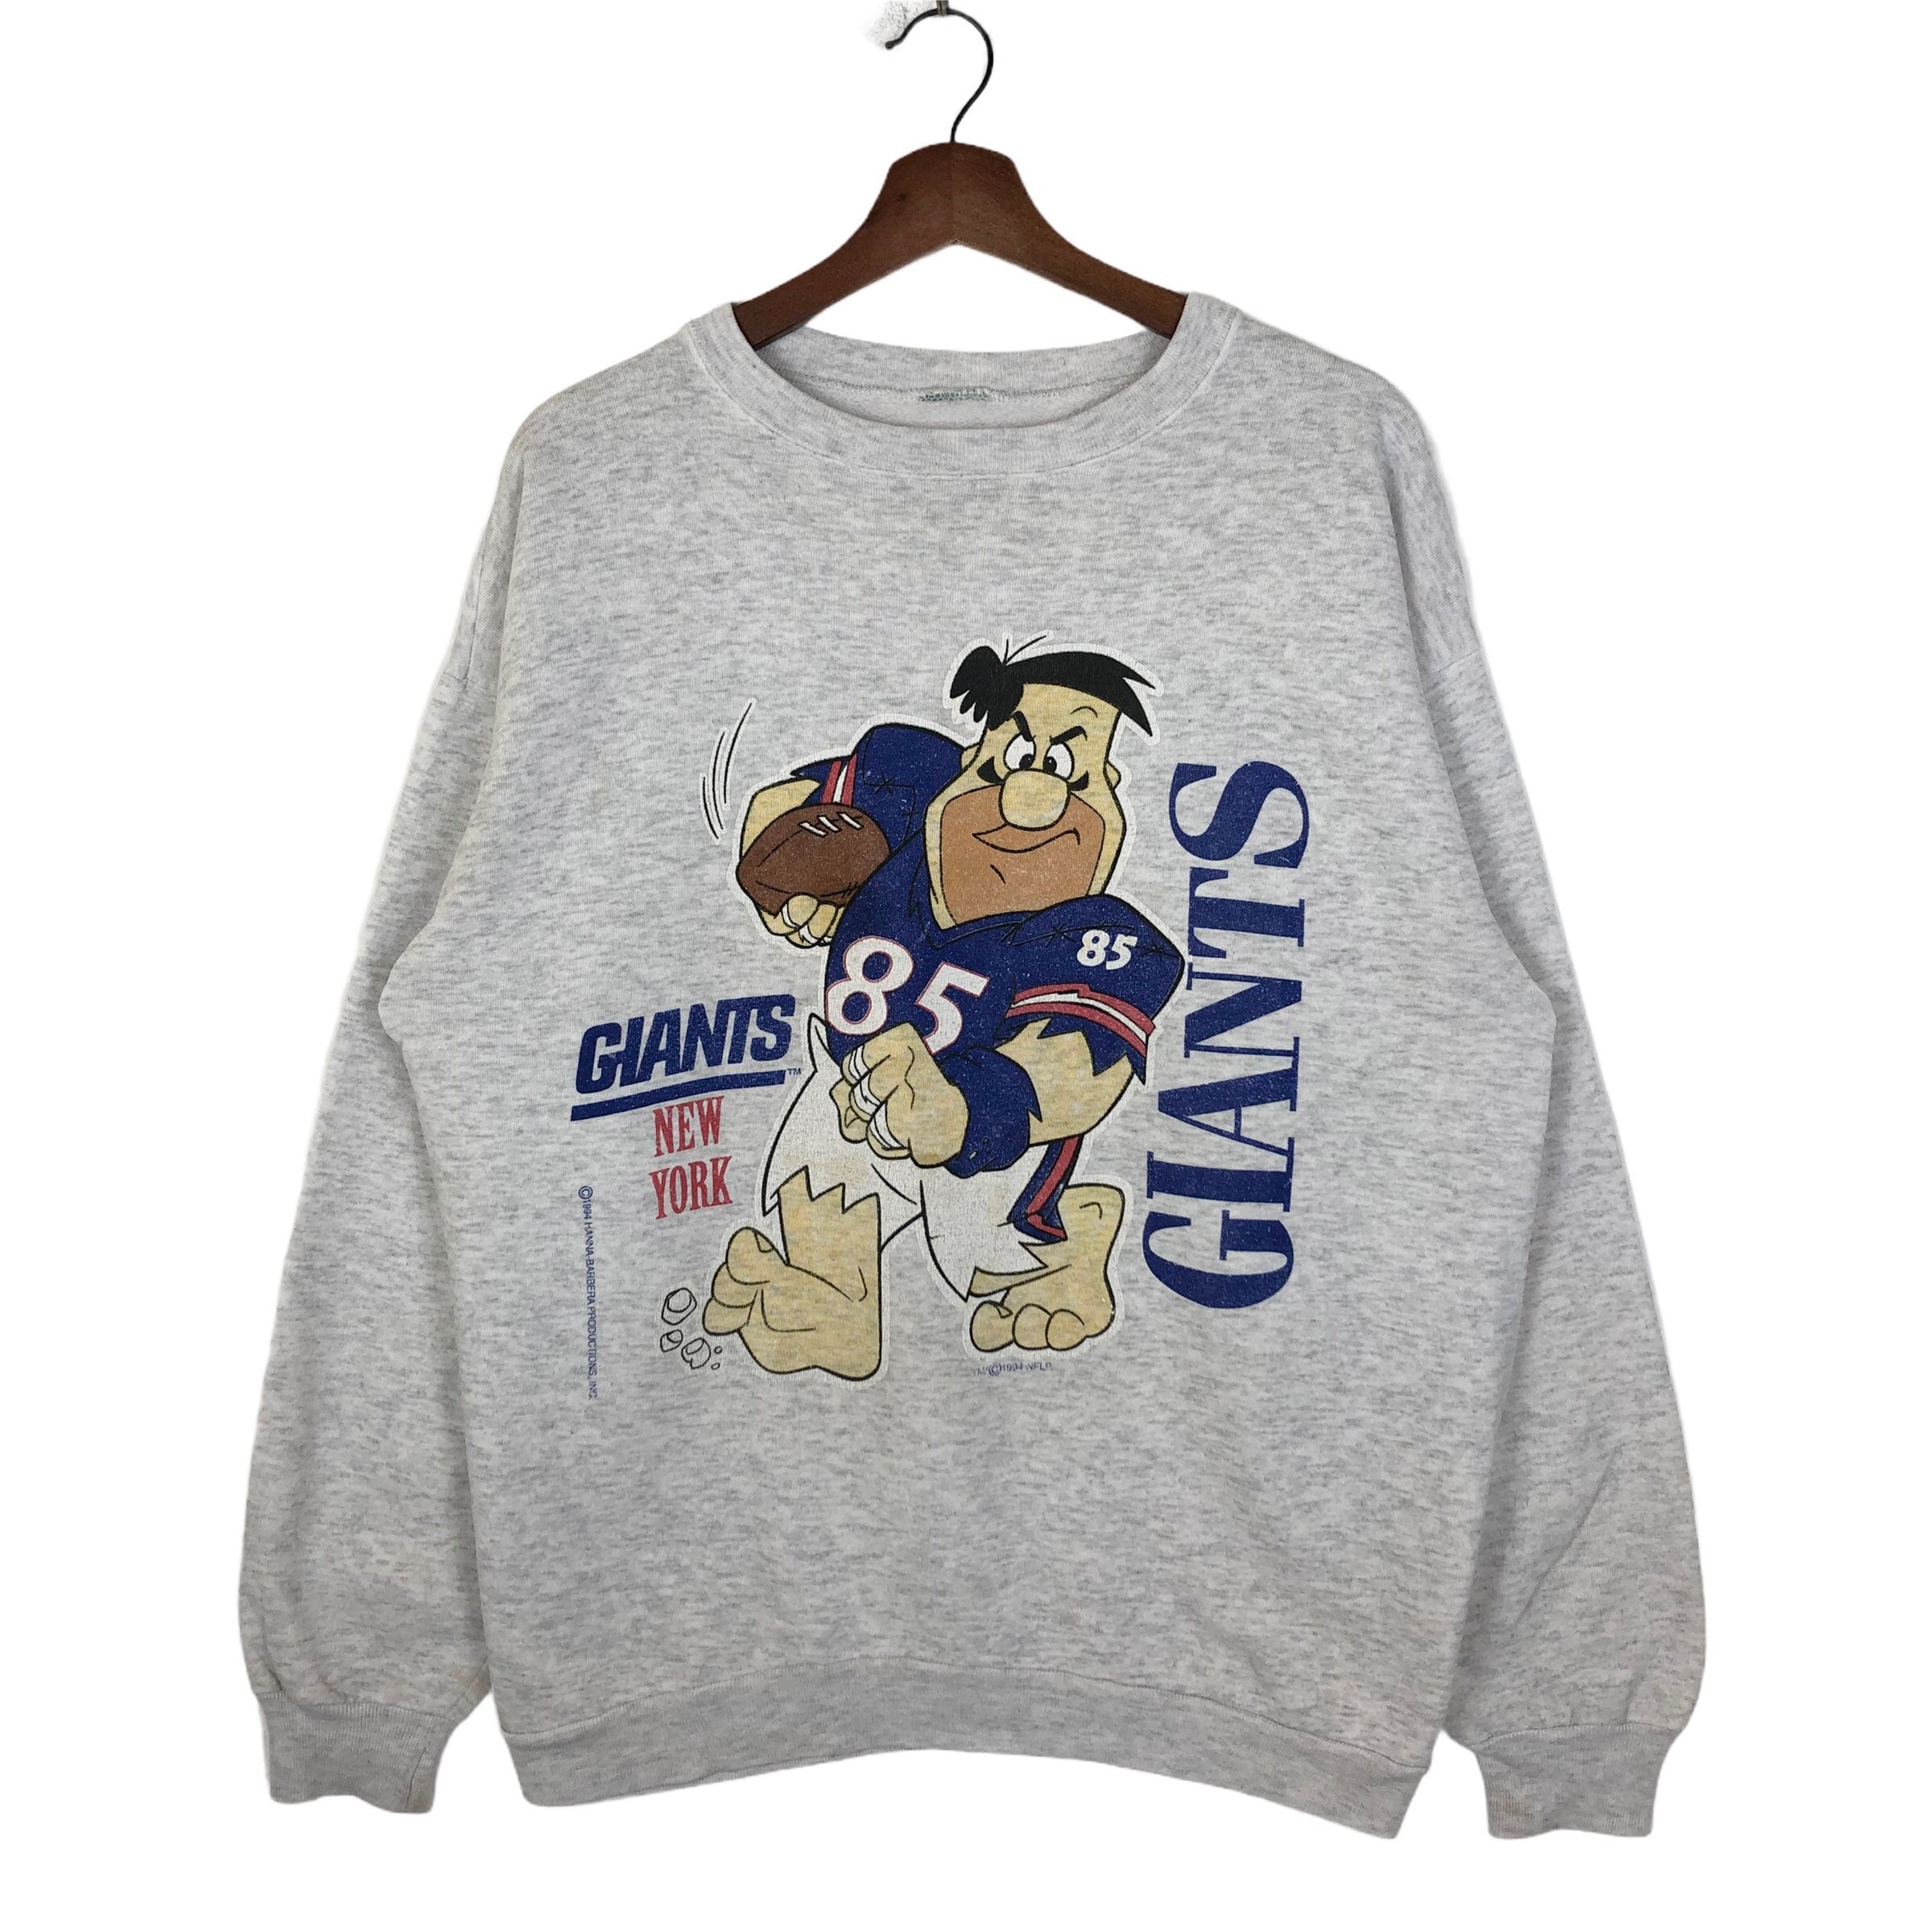 Vintage 90s the New York Giants Sweatshirt Crewneck NY Giants